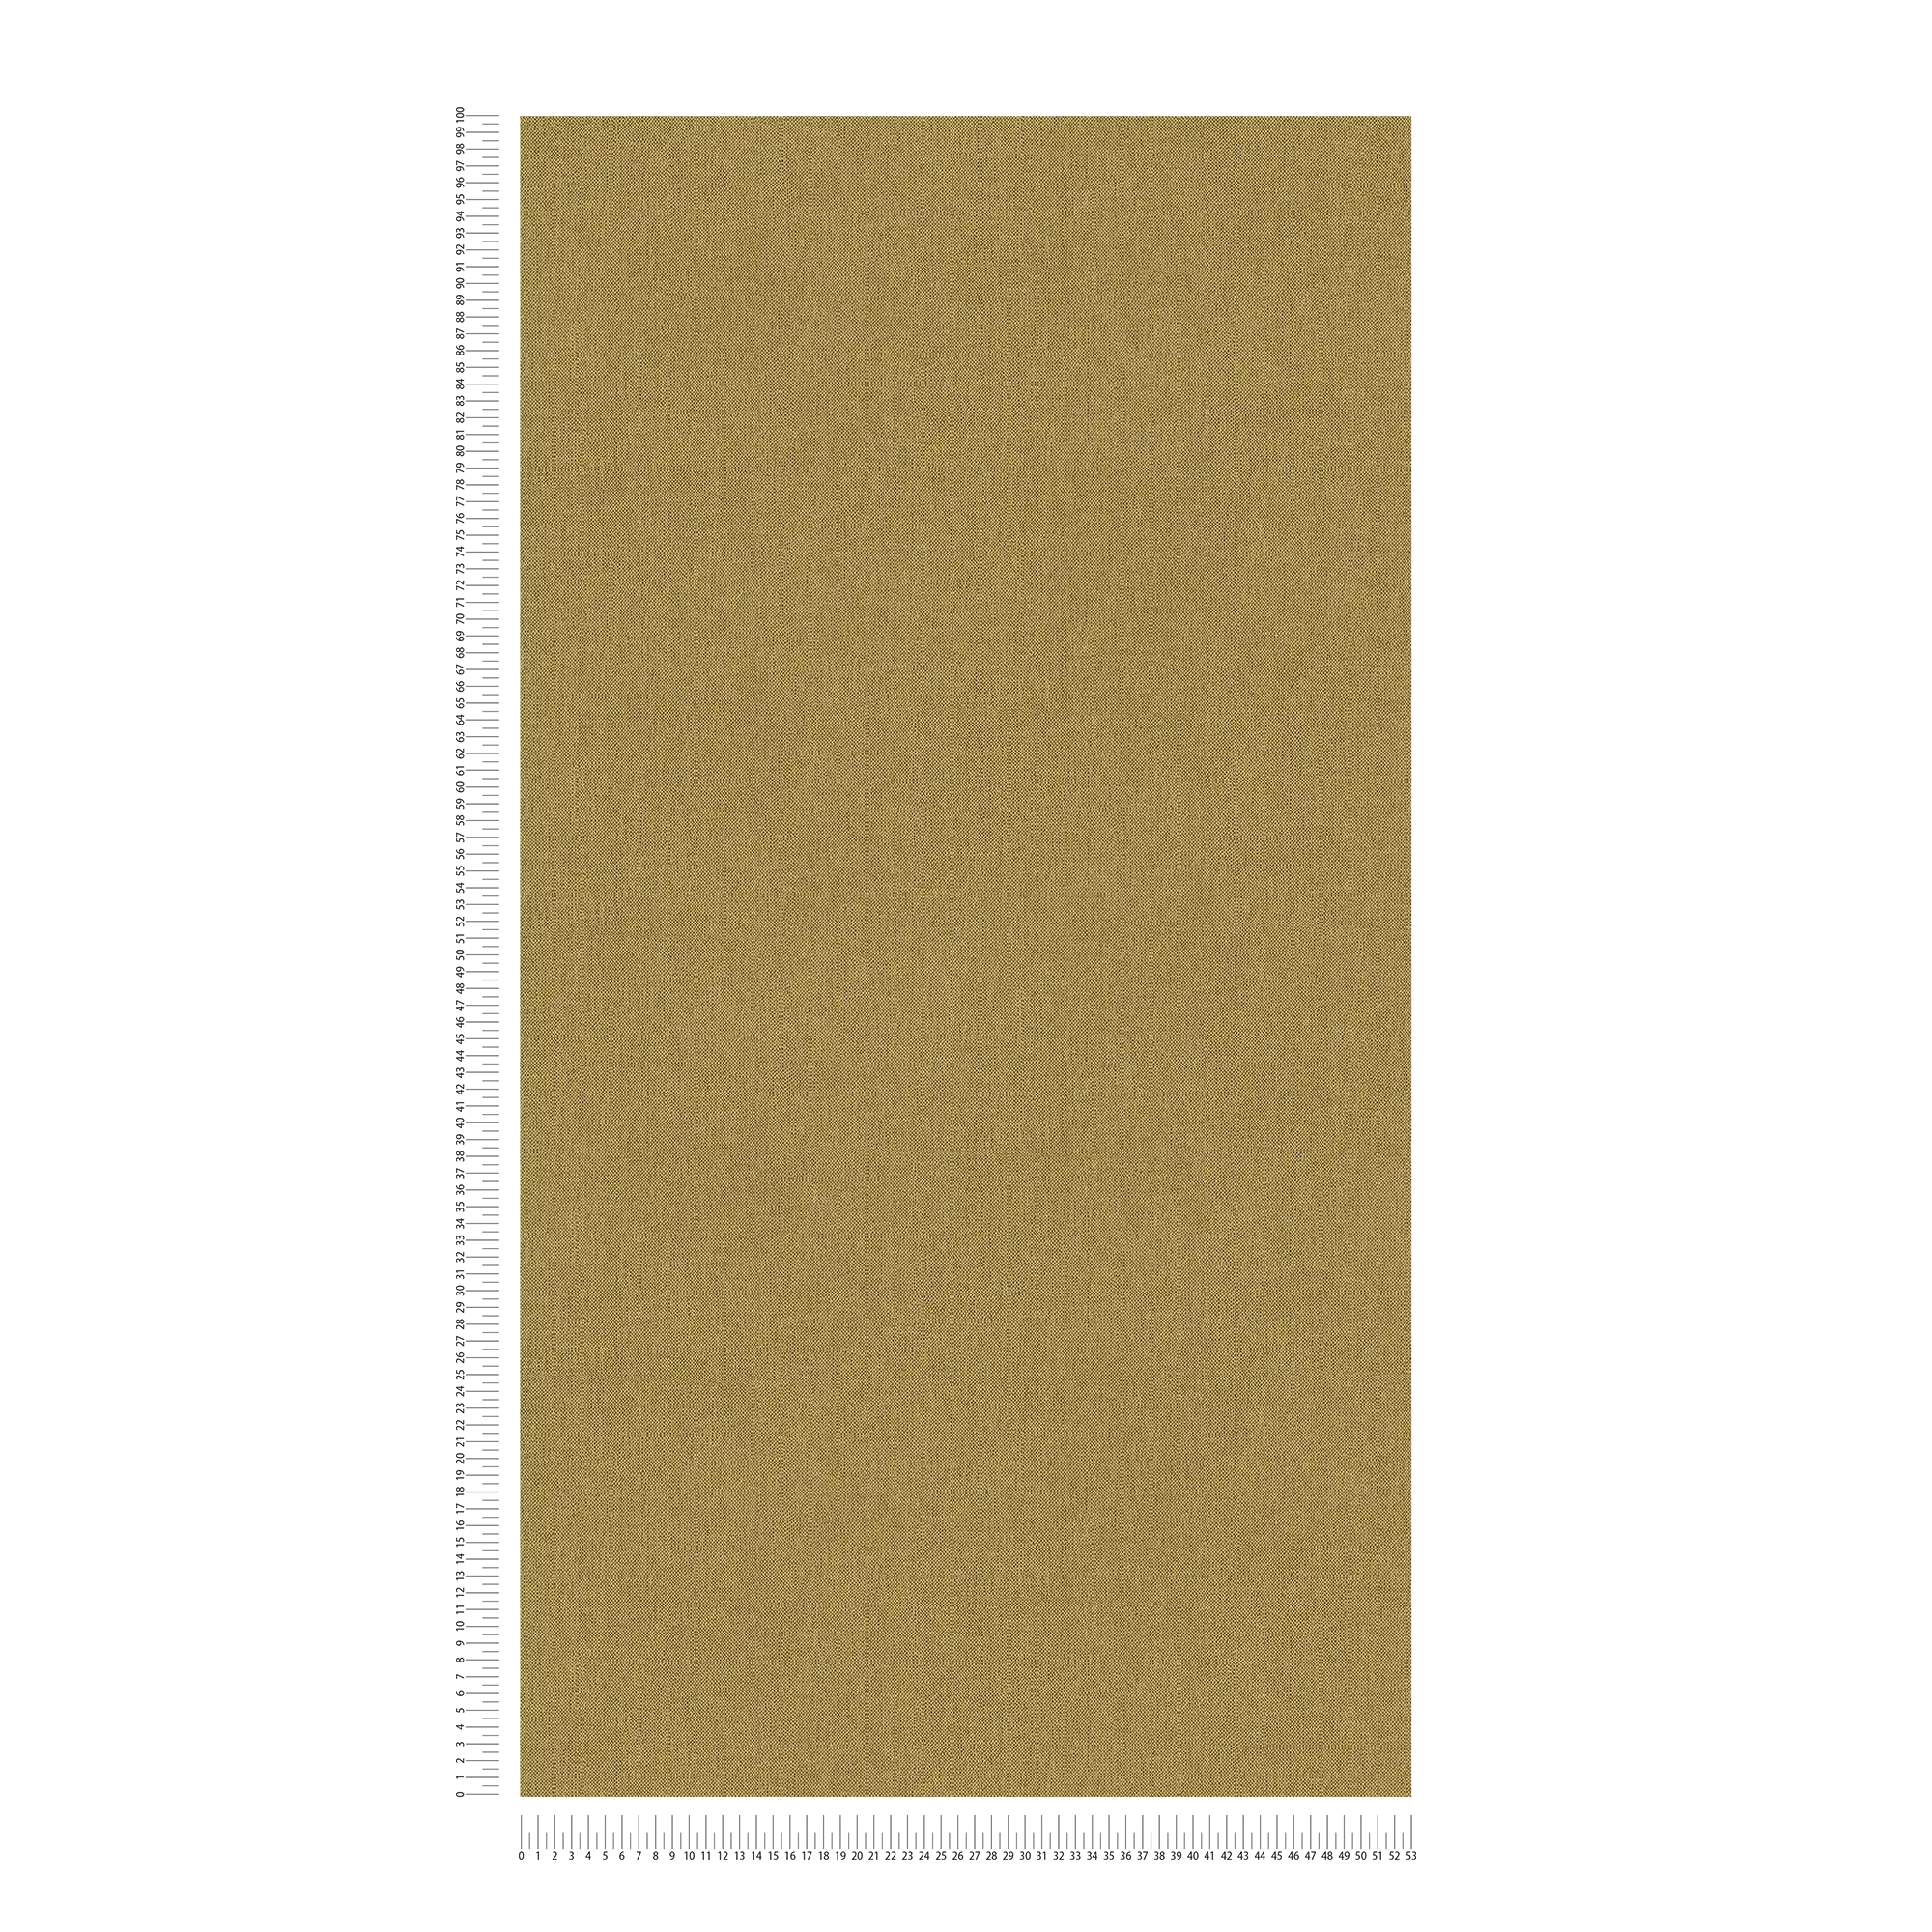             carta da parati giallo ocra screziata con struttura in tessuto - giallo, marrone
        